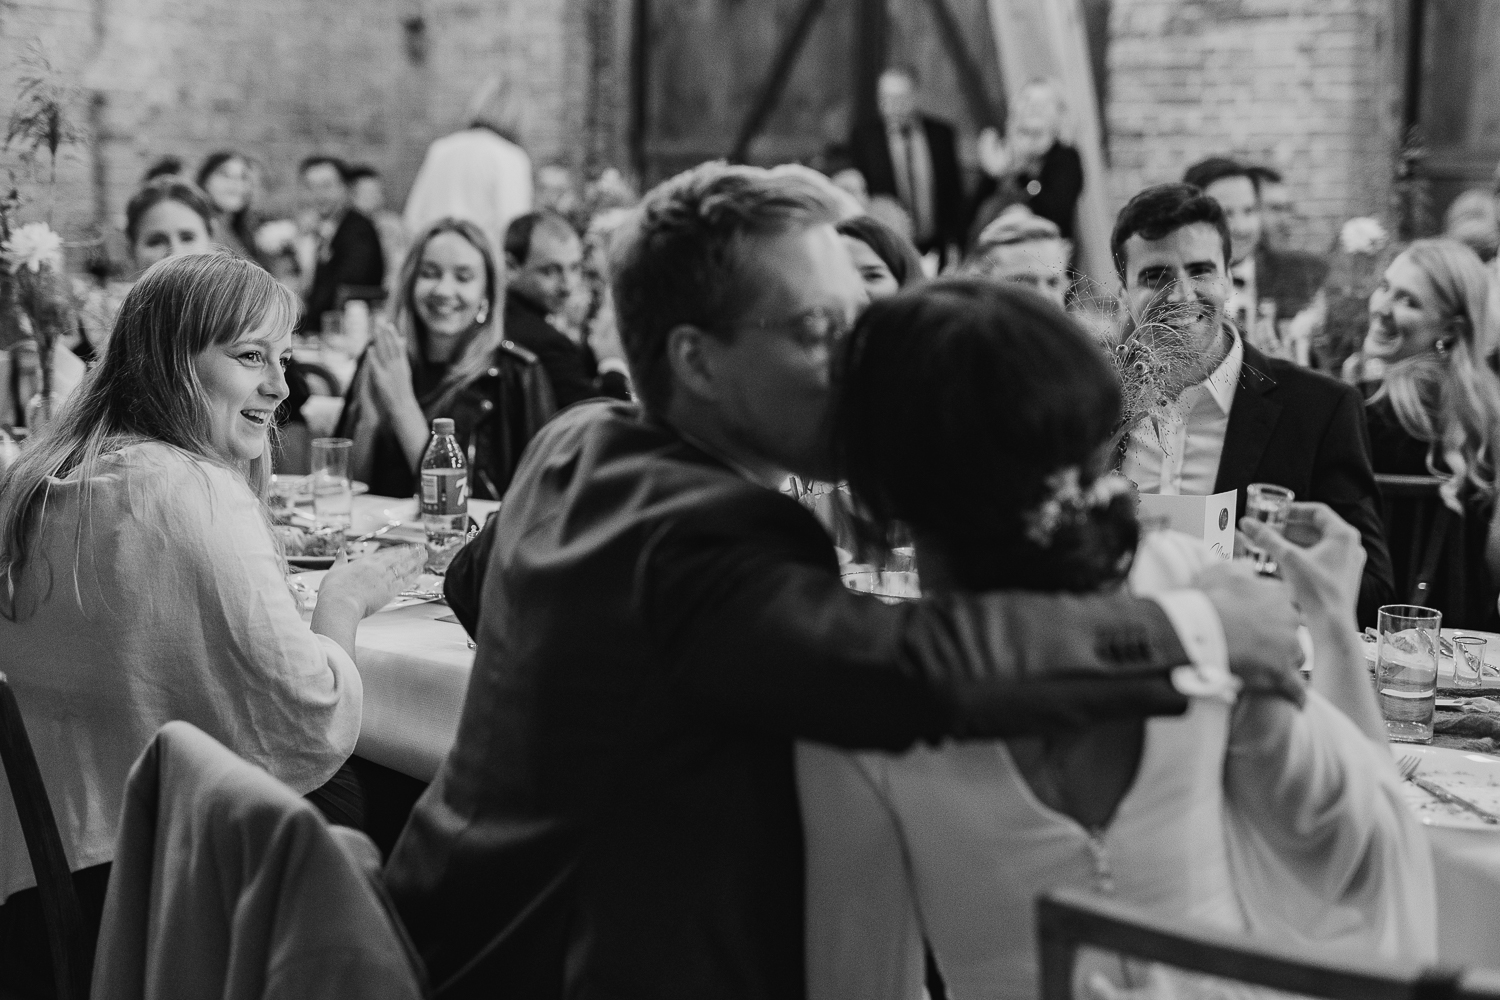 Kadr z fotoreportażu ślubnego, przedstawiający pocałunek pary młodej przy stole weselnym.